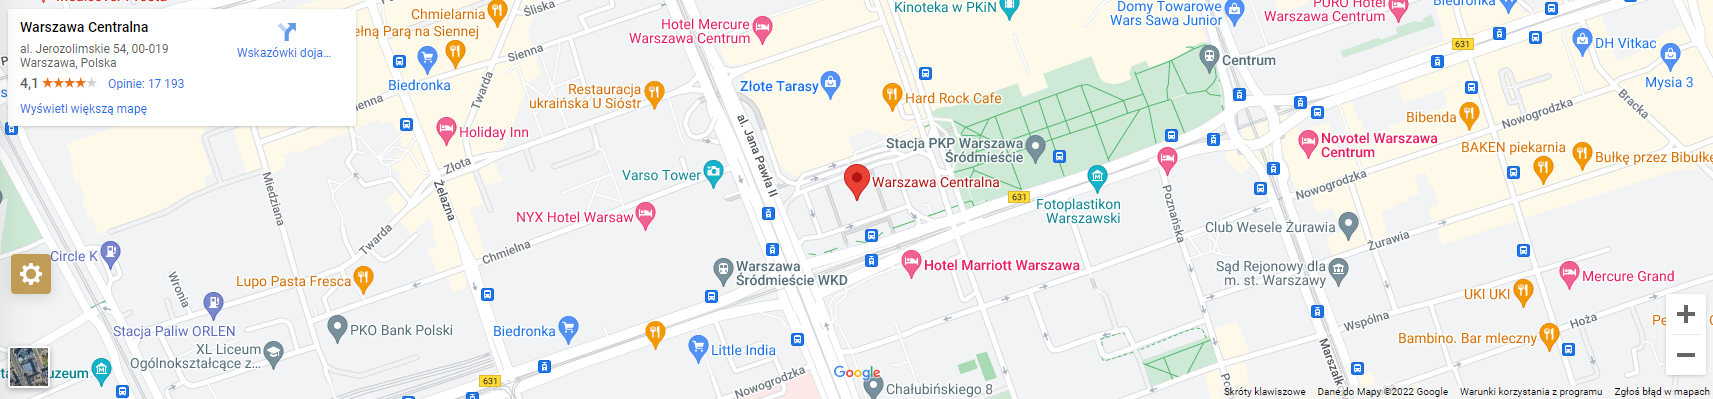 Blok z Google Maps lub OpenStreetMap (Vega)